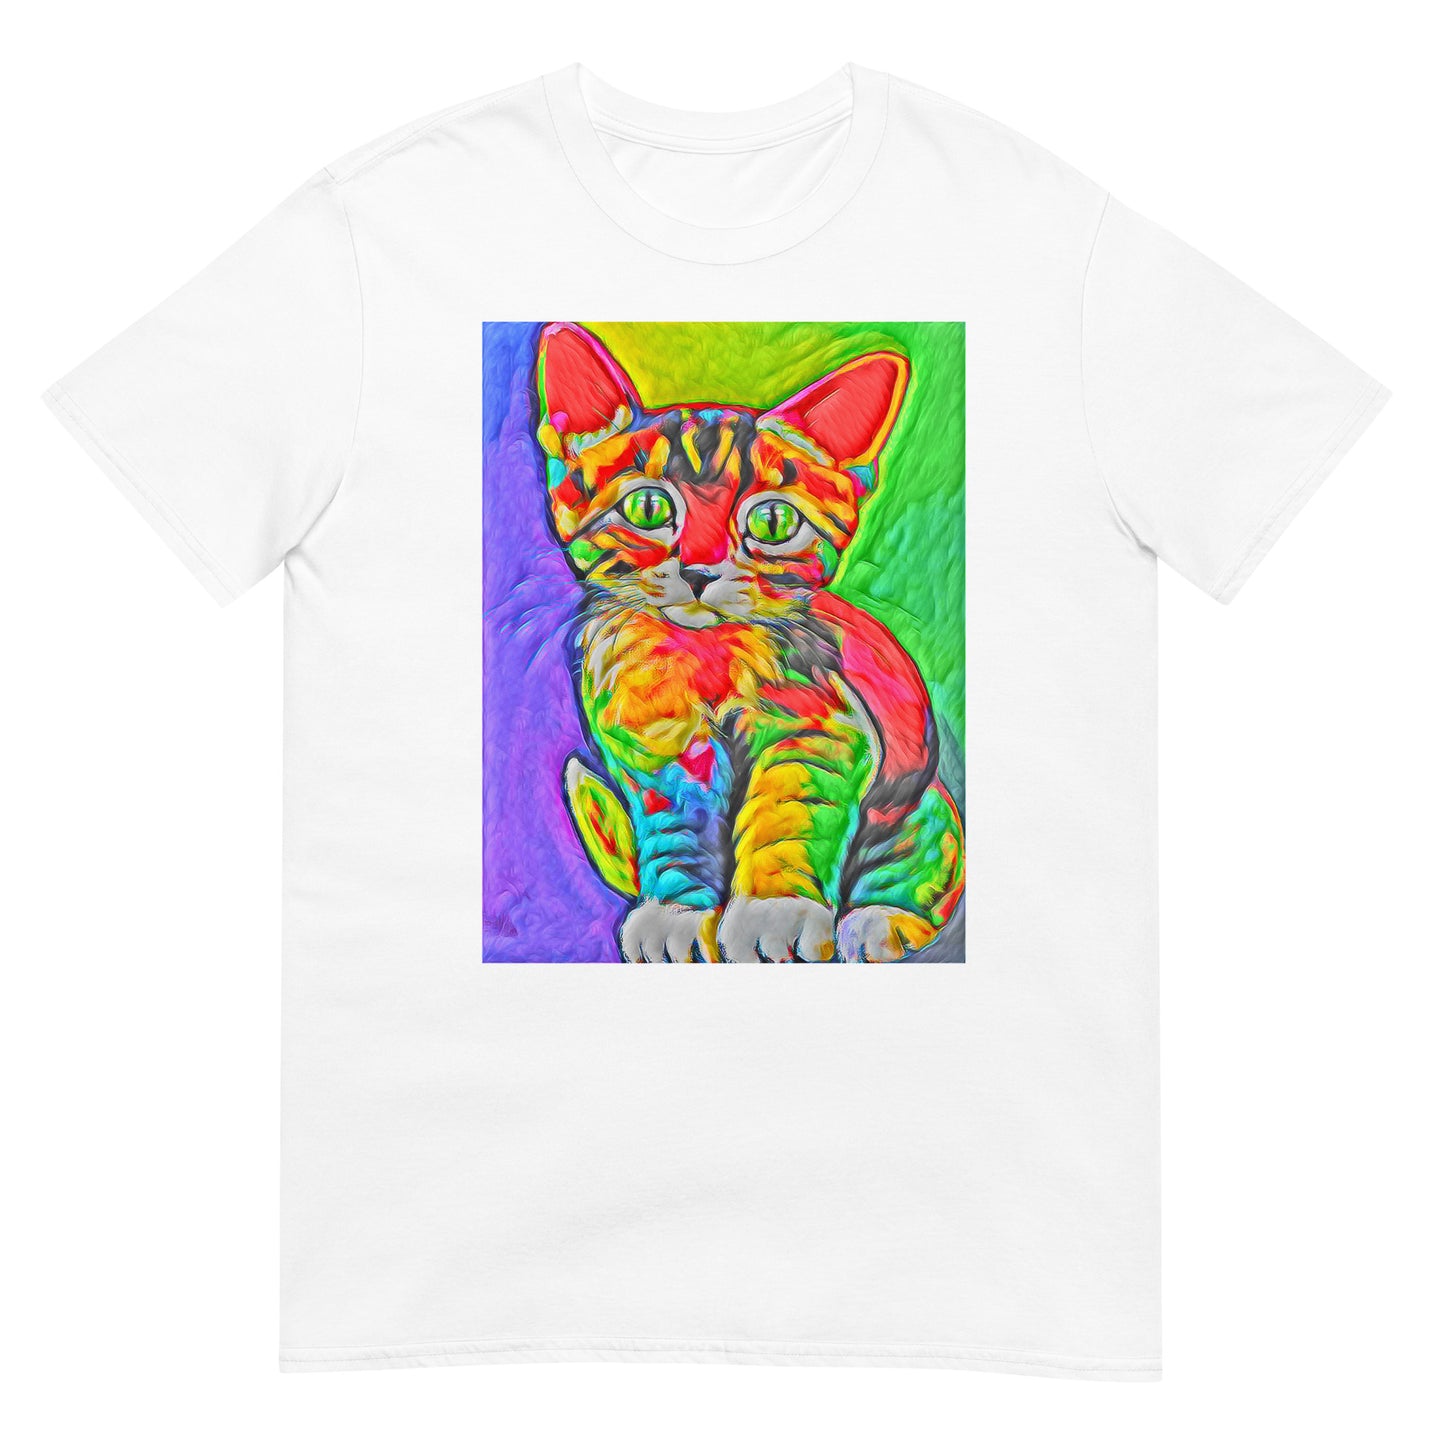 Rave Kitty Pop Art Unisex Softstyle Tee